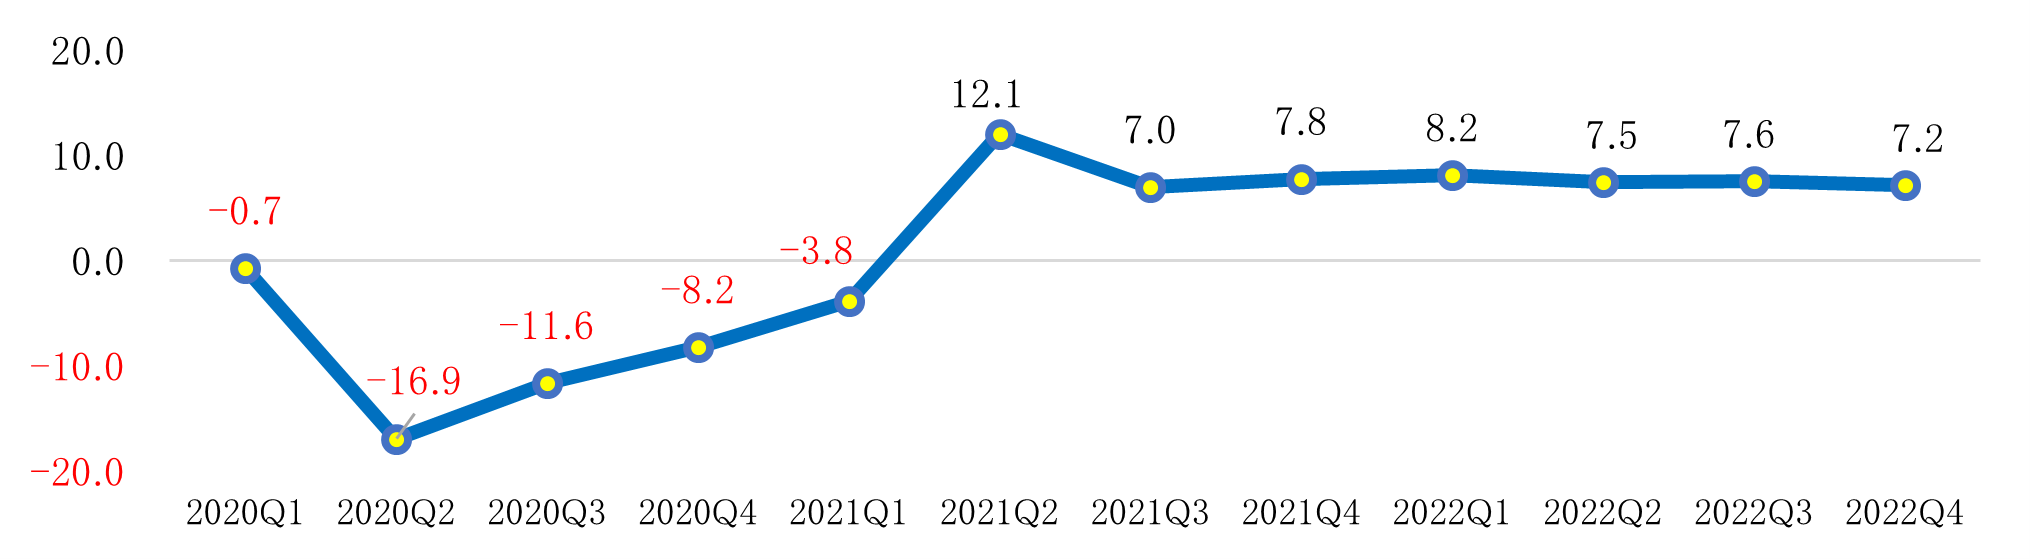 フィリピンの2022年GDP成長率は+7.6%